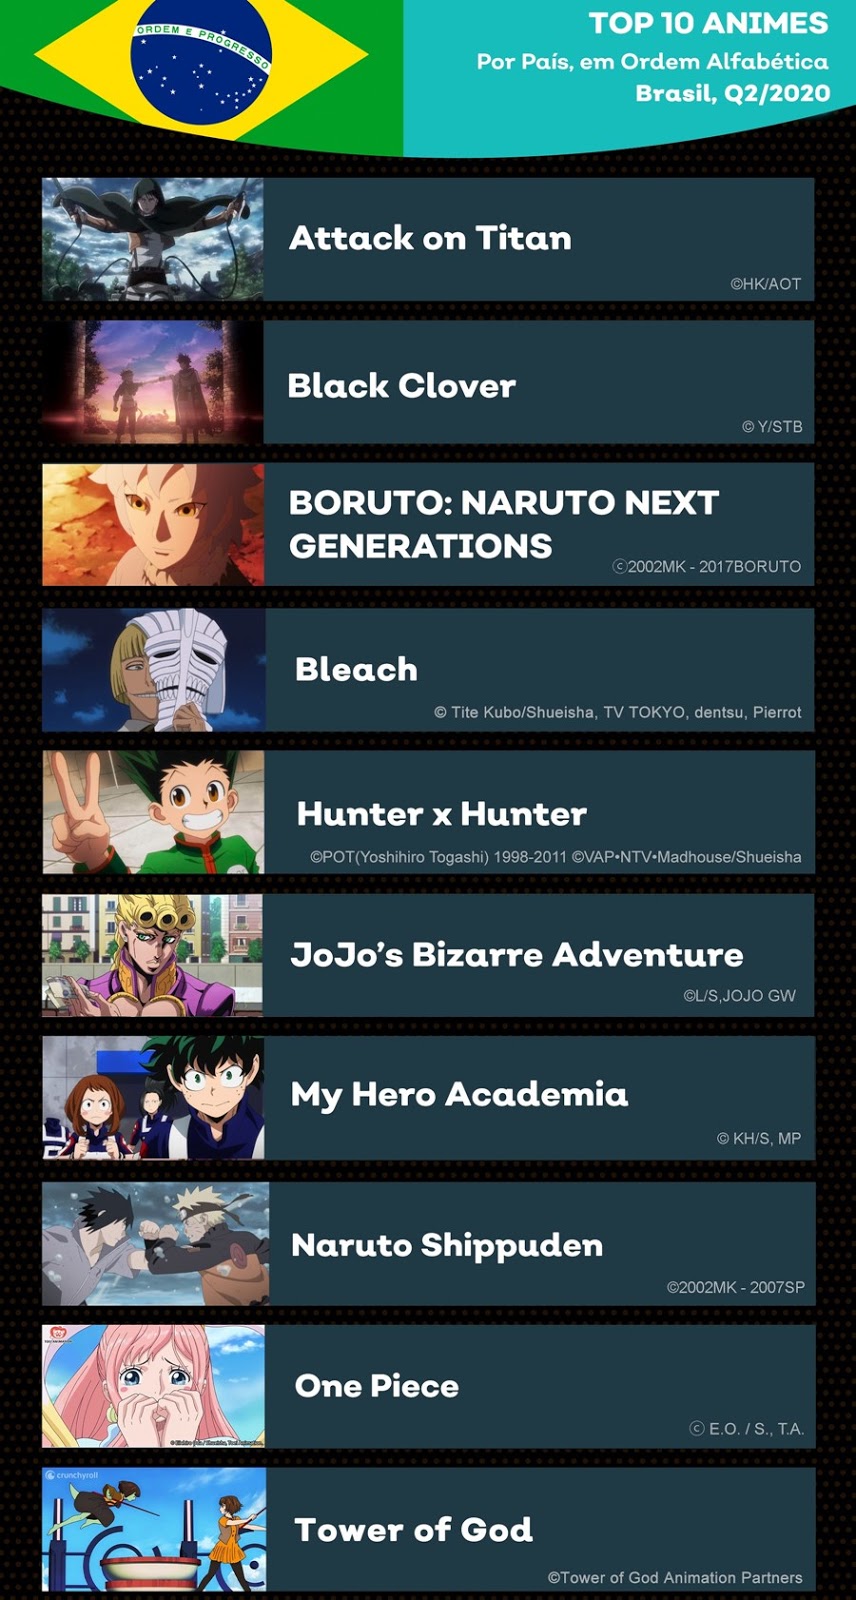 Mangás Brasil - Hoje, em seu site oficial, a plataforma de streaming  Crunchyroll divulgou a lista de novas dublagens para animes, incluindo  animes da temporada e alguns outros títulos do catalogo. Referente